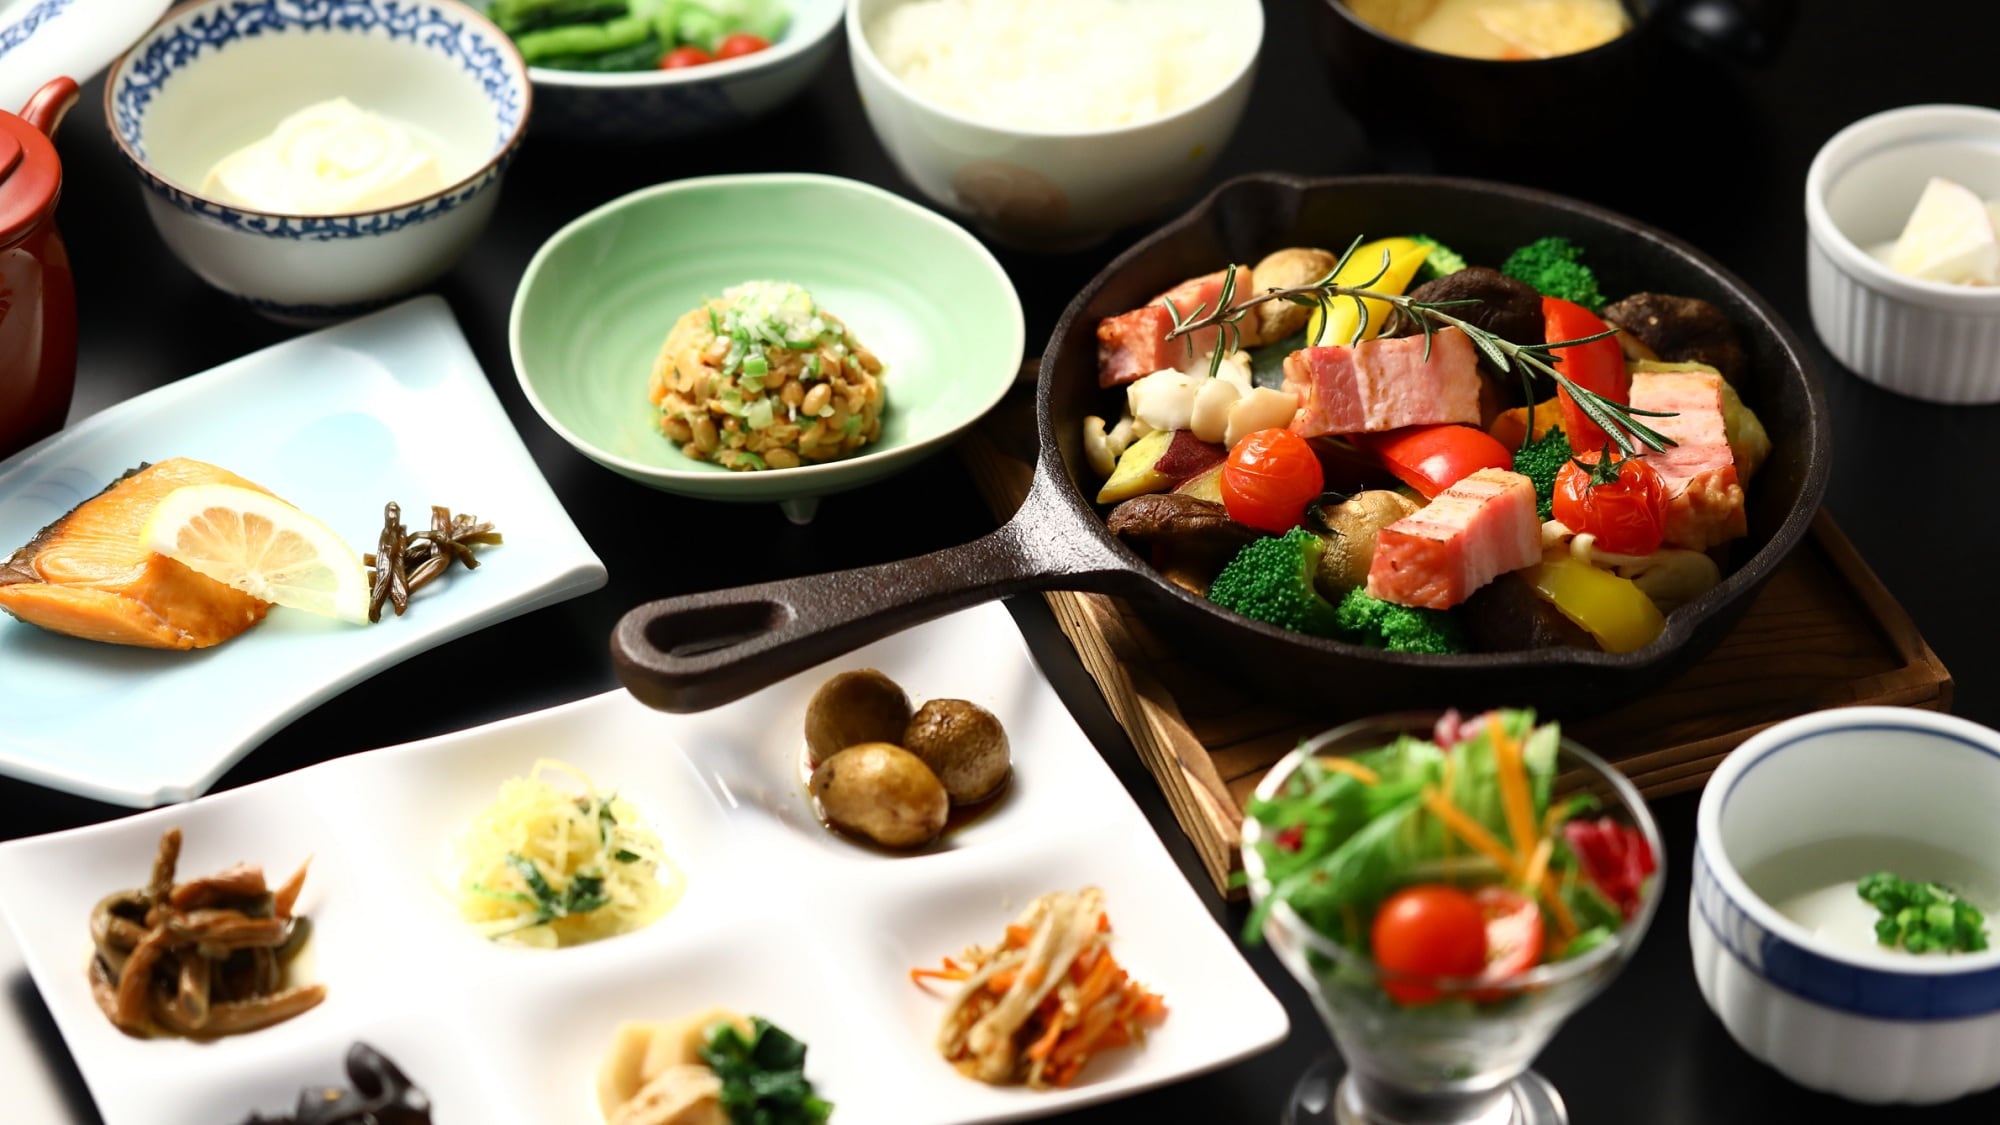 【조식】현지 야채를 듬뿍 사용한 일본식 서양식 조식을.